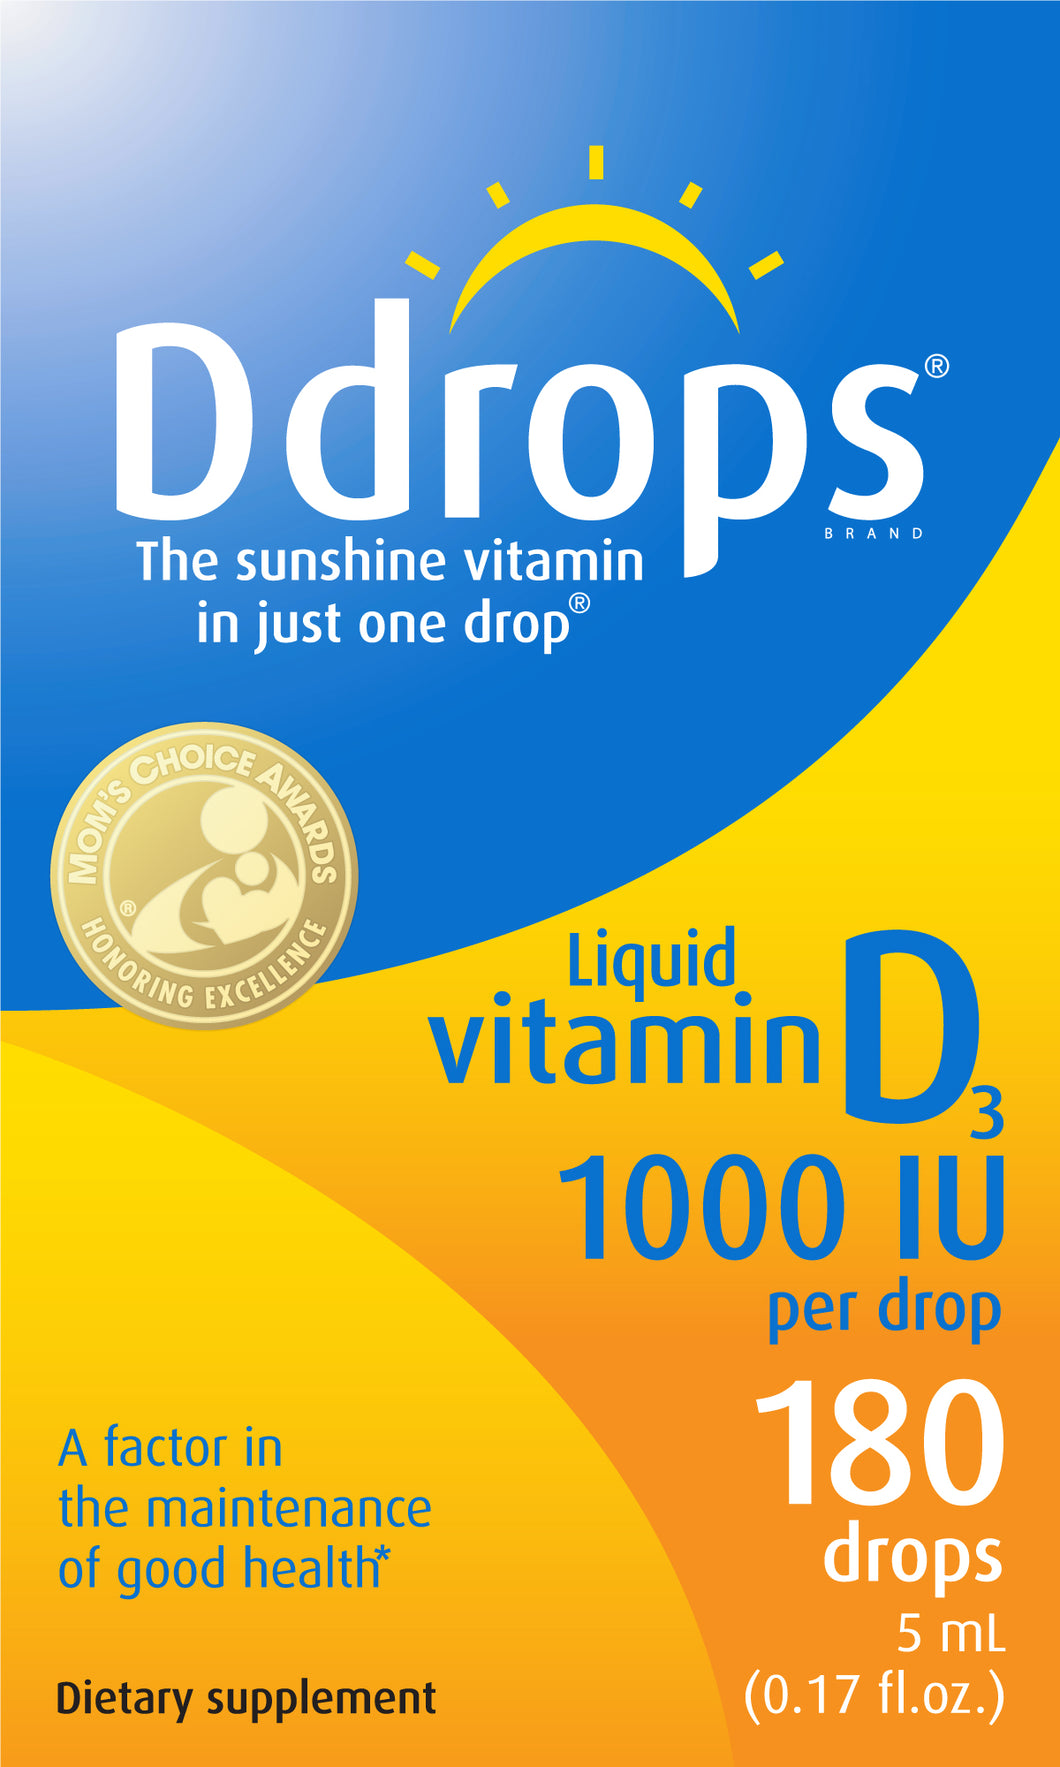 Ddrops Adult Vitamin D Liquid Drops, 1000 IU, 180 drops Ct Multicolor 0.17 fl oz - Premium Vitamin D3 from Ddrops - Just $19.54! Shop now at Kis'like